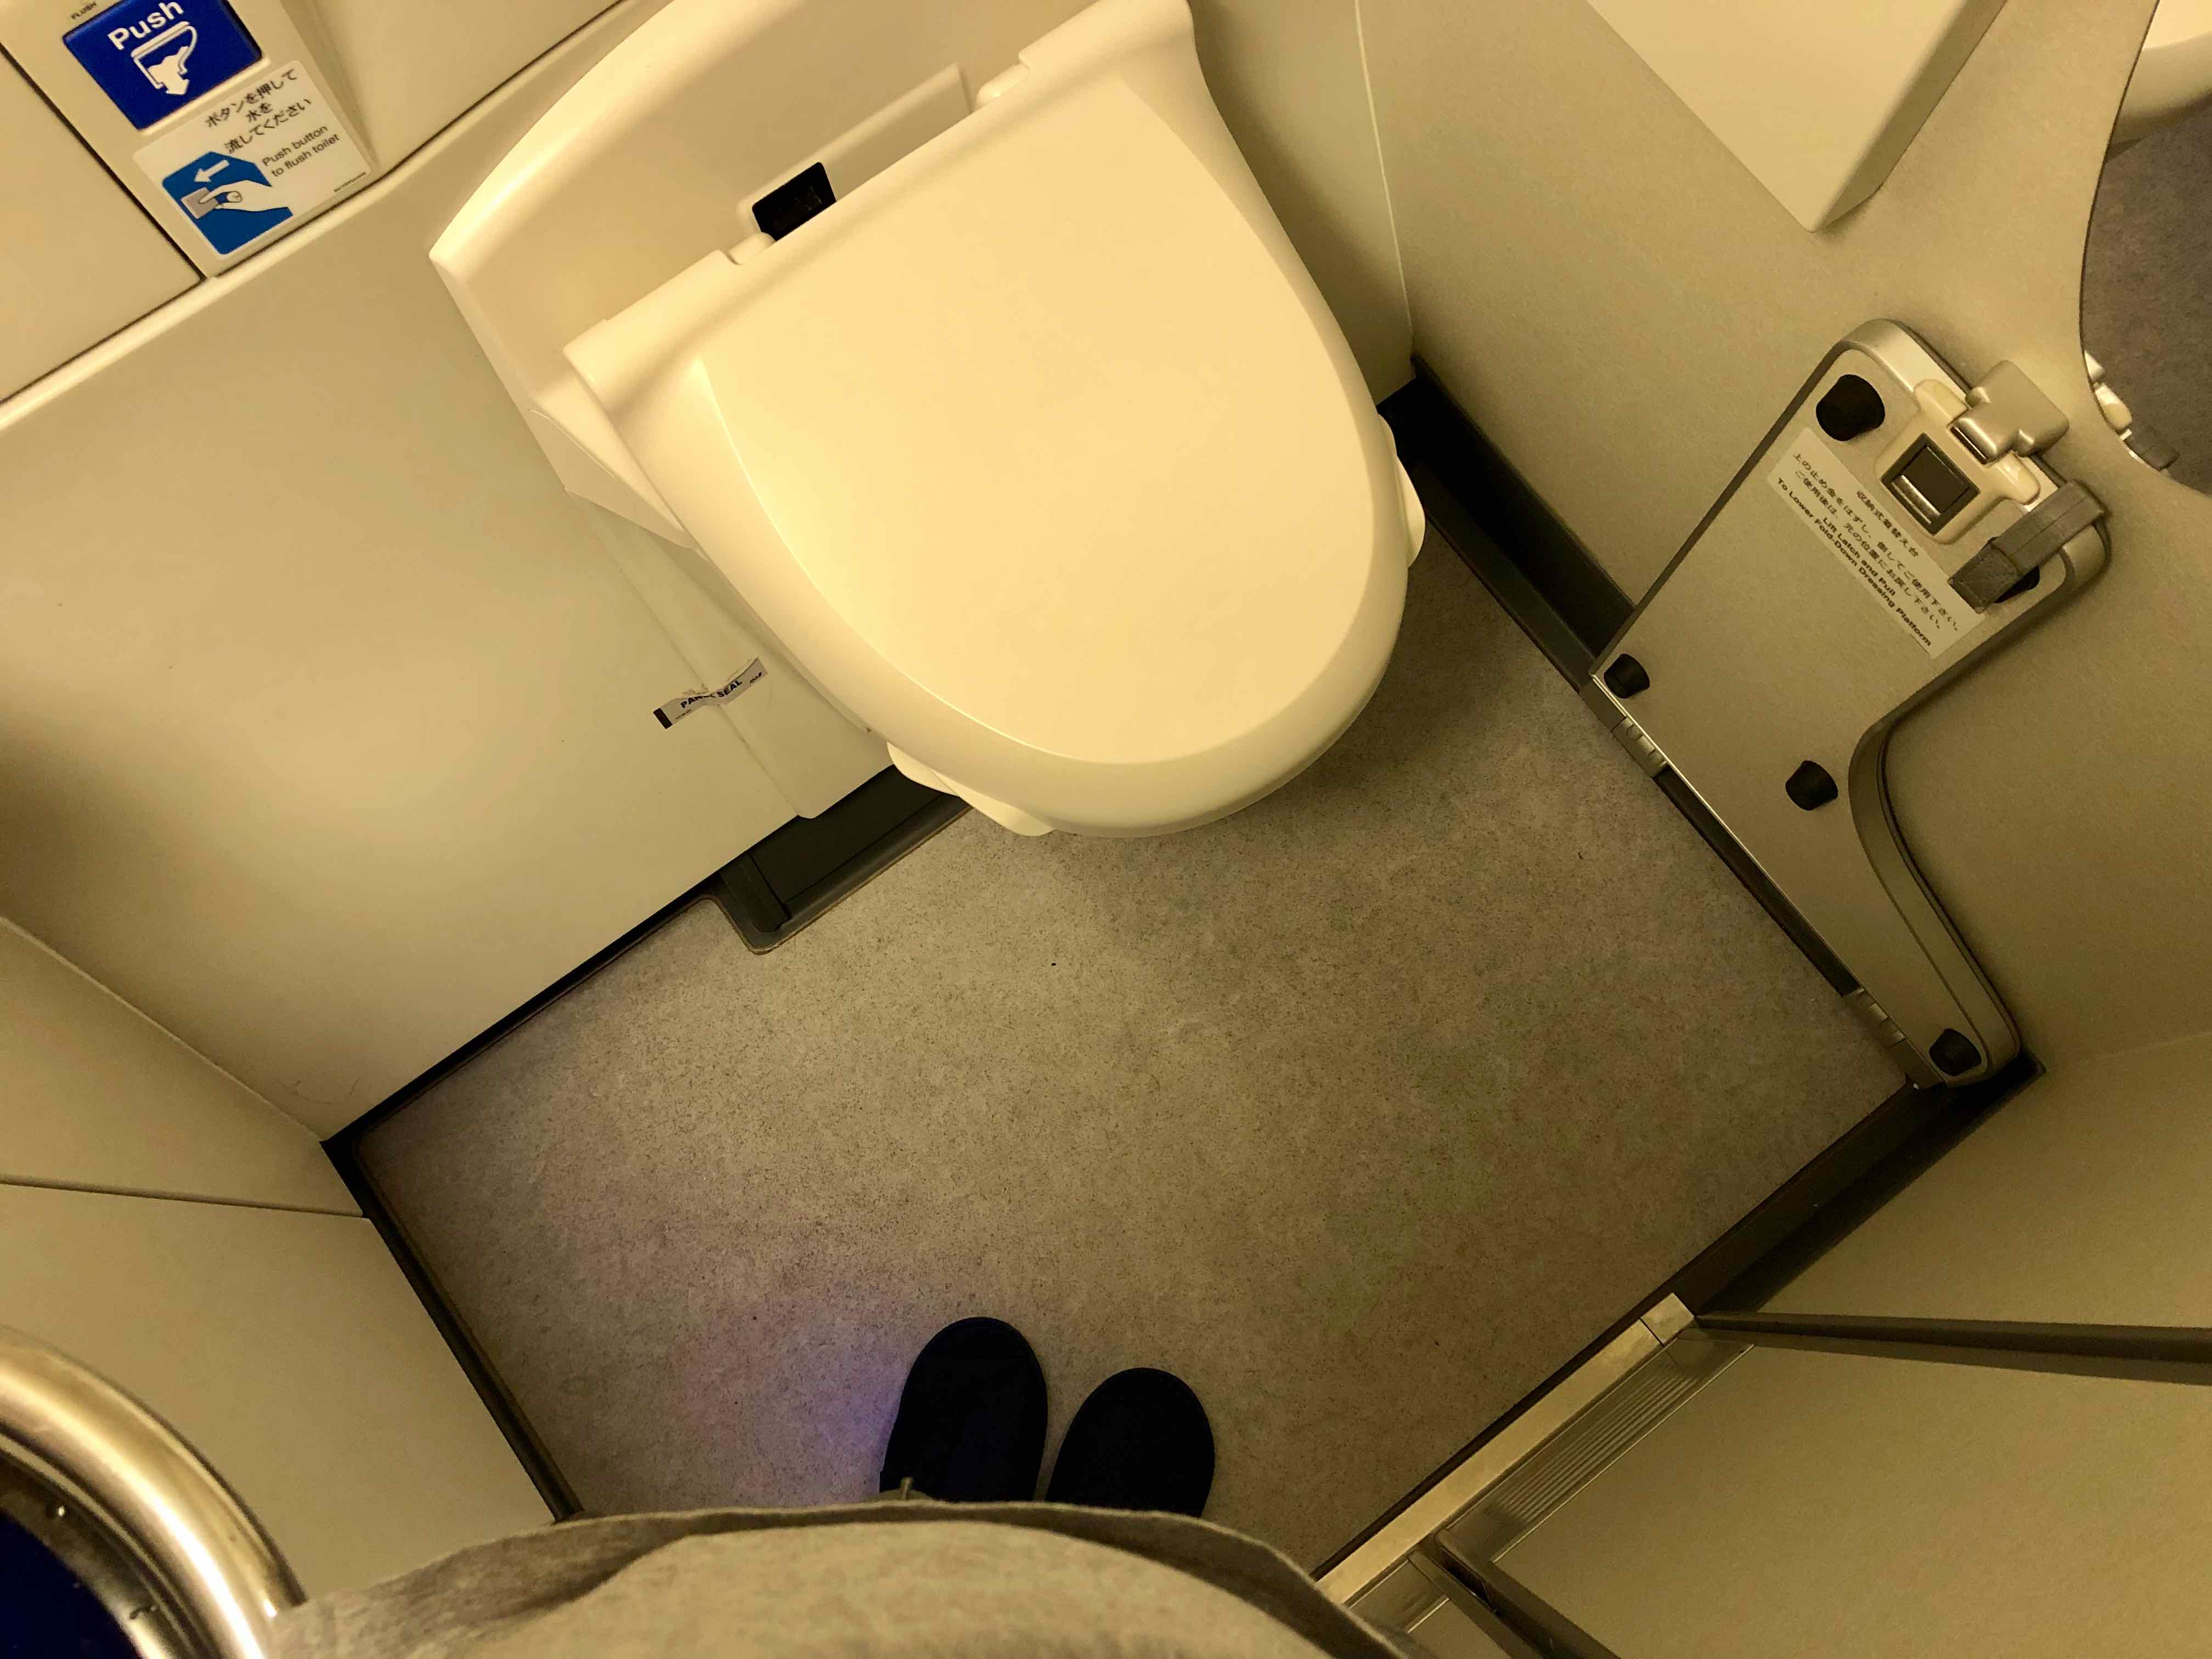 ANA 777 First Class lavatory